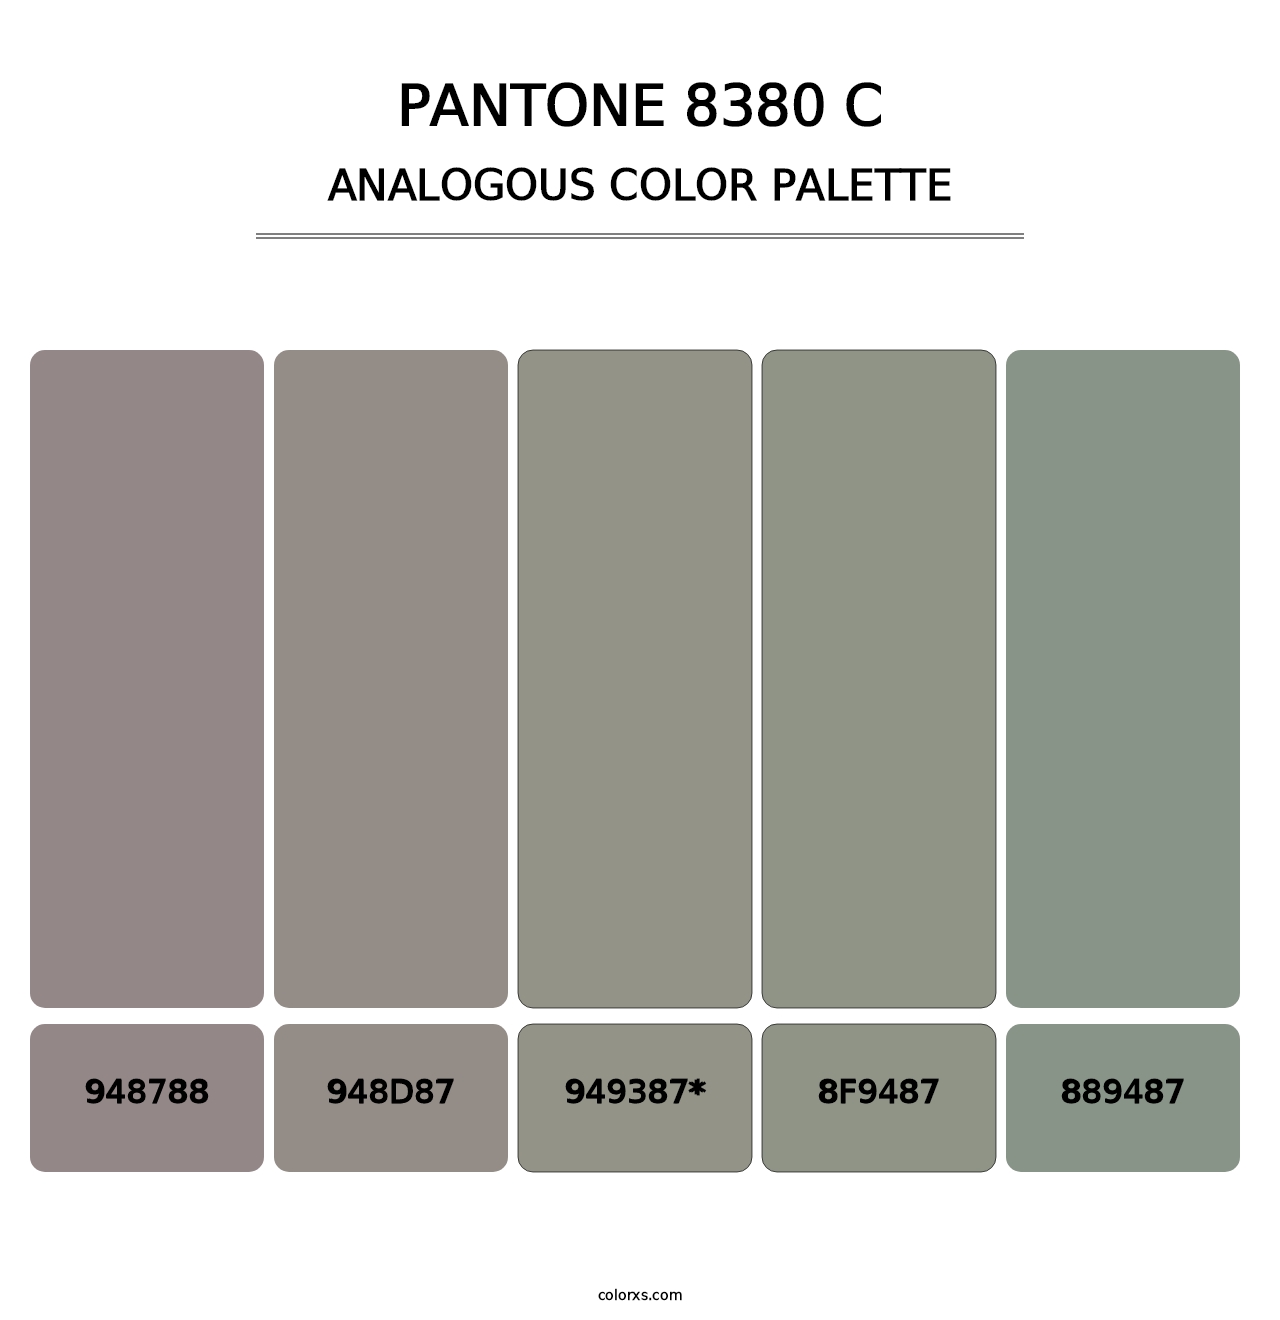 PANTONE 8380 C - Analogous Color Palette